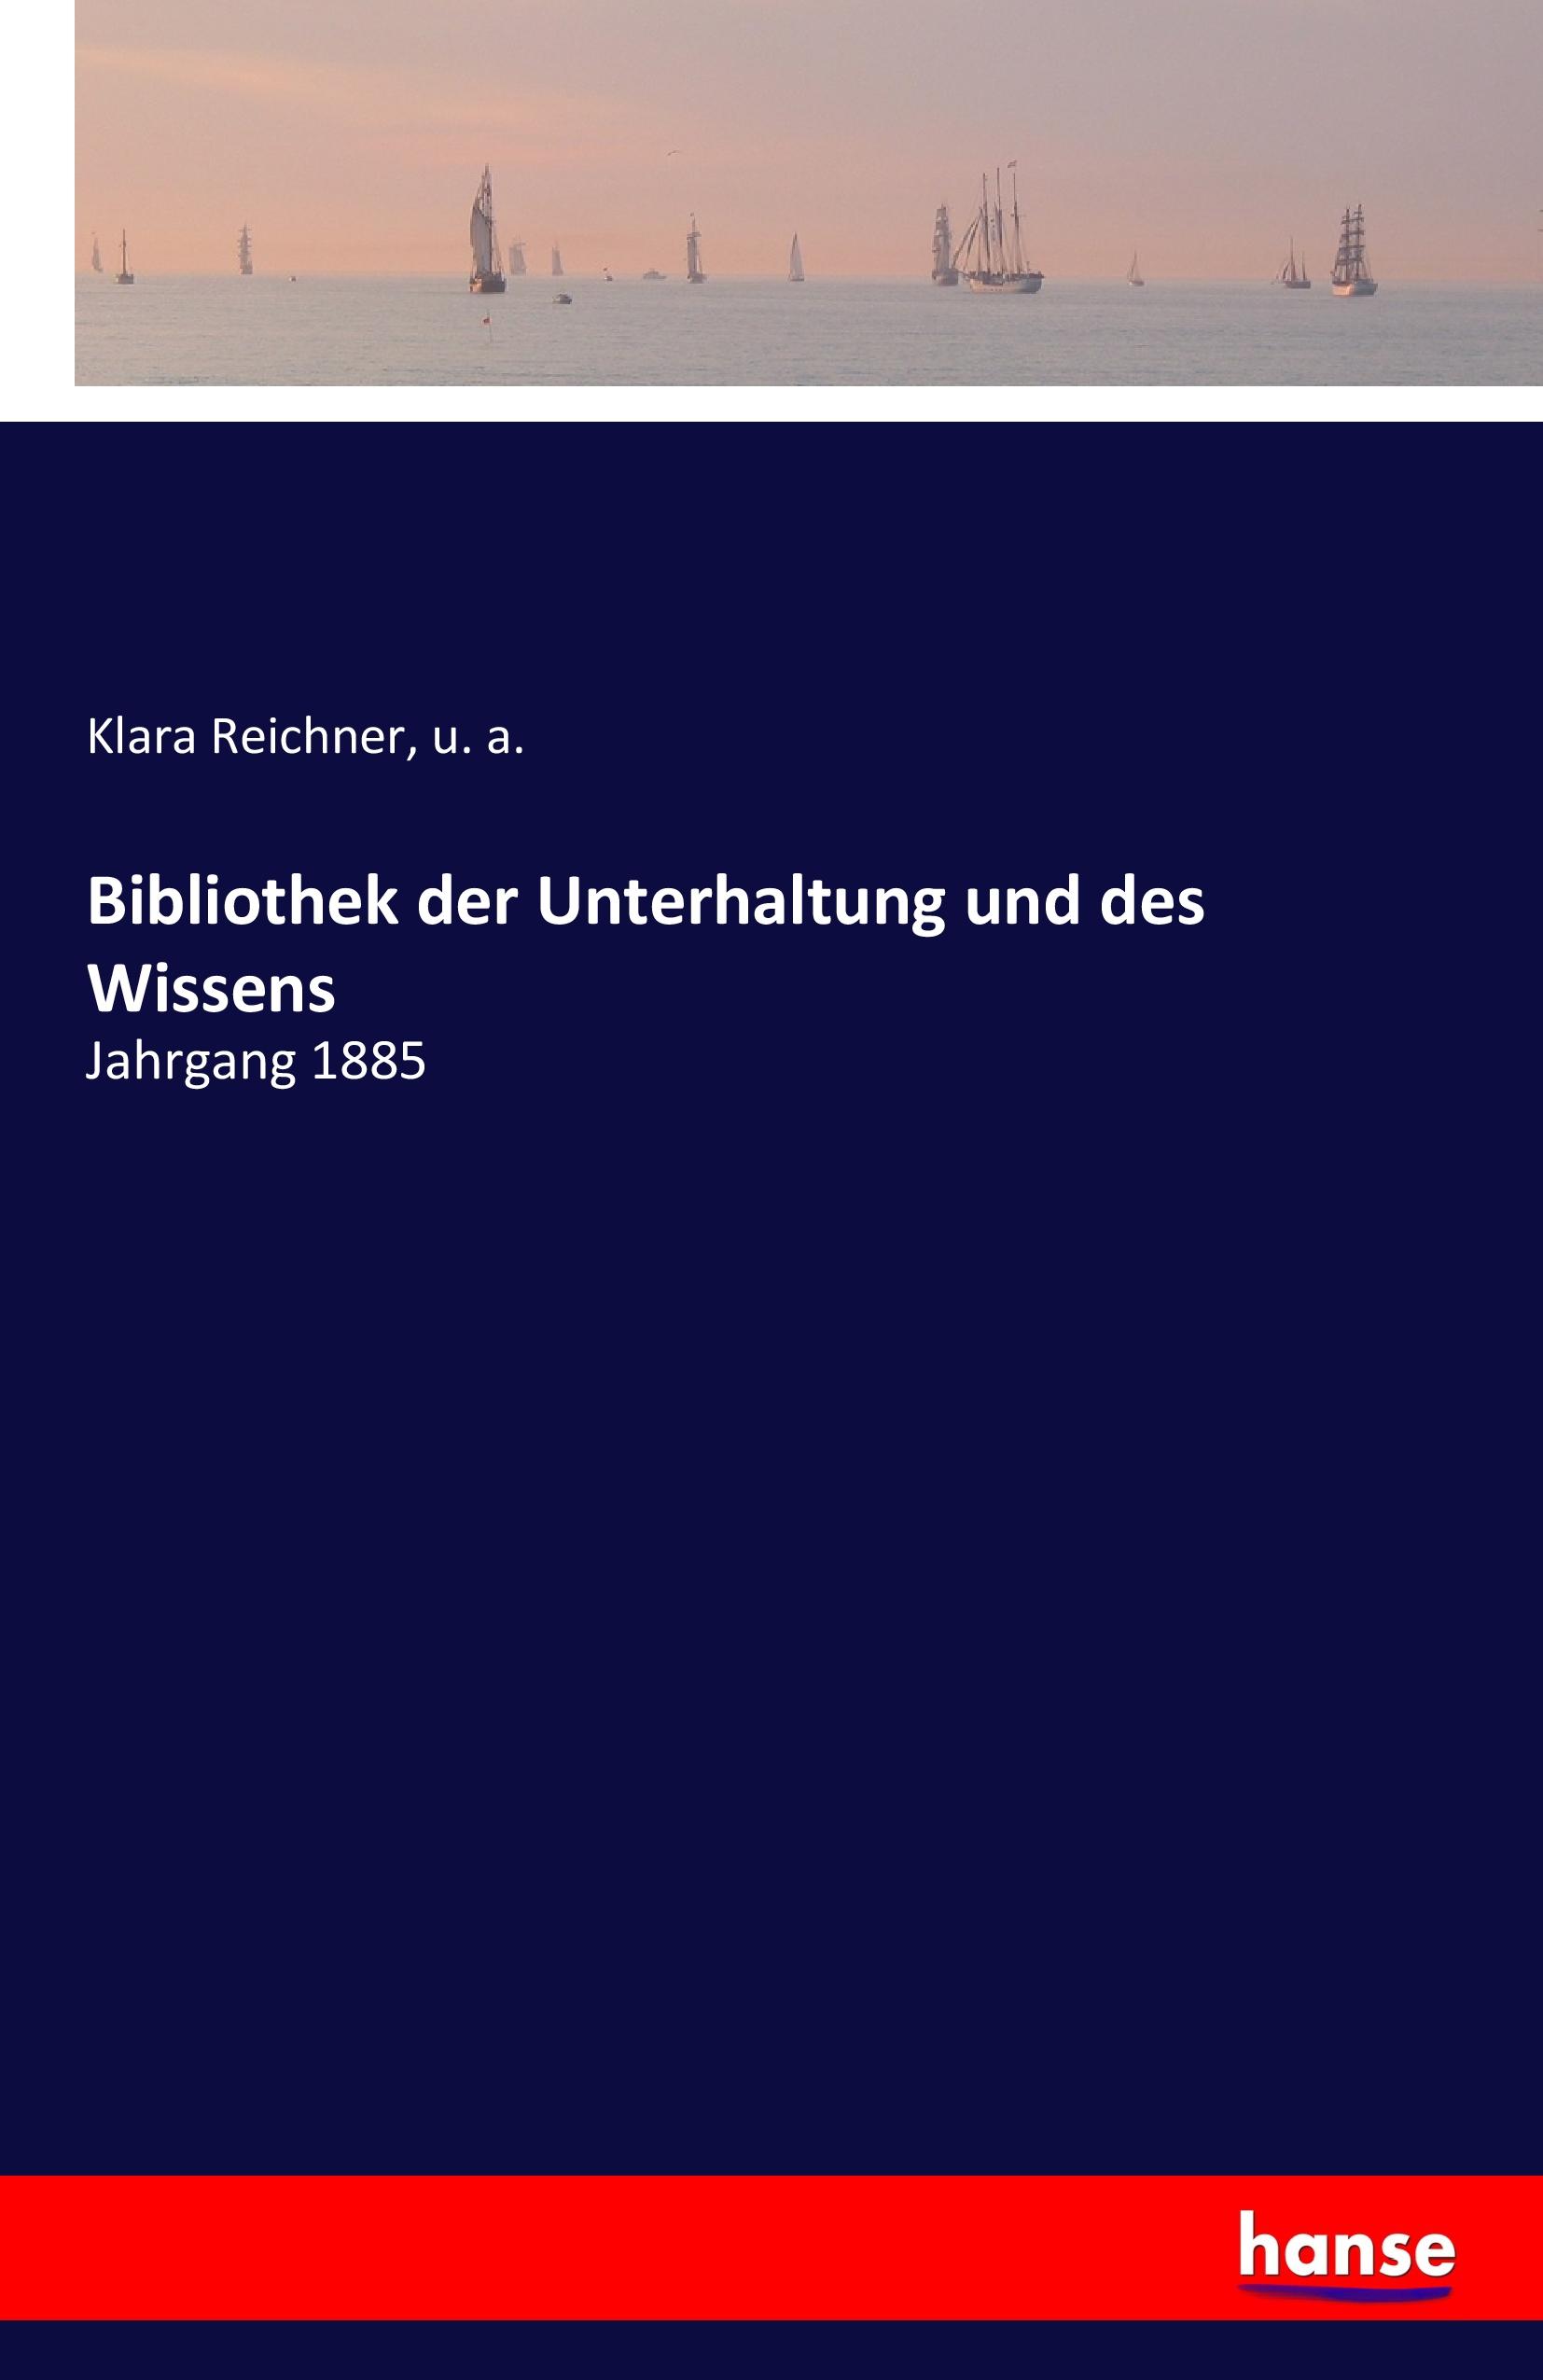 Bibliothek der Unterhaltung und des Wissens | Jahrgang 1885 | Klara Reichner (u. a.) | Taschenbuch | Paperback | 260 S. | Deutsch | 2018 | hansebooks | EAN 9783741129636 - Reichner, Klara